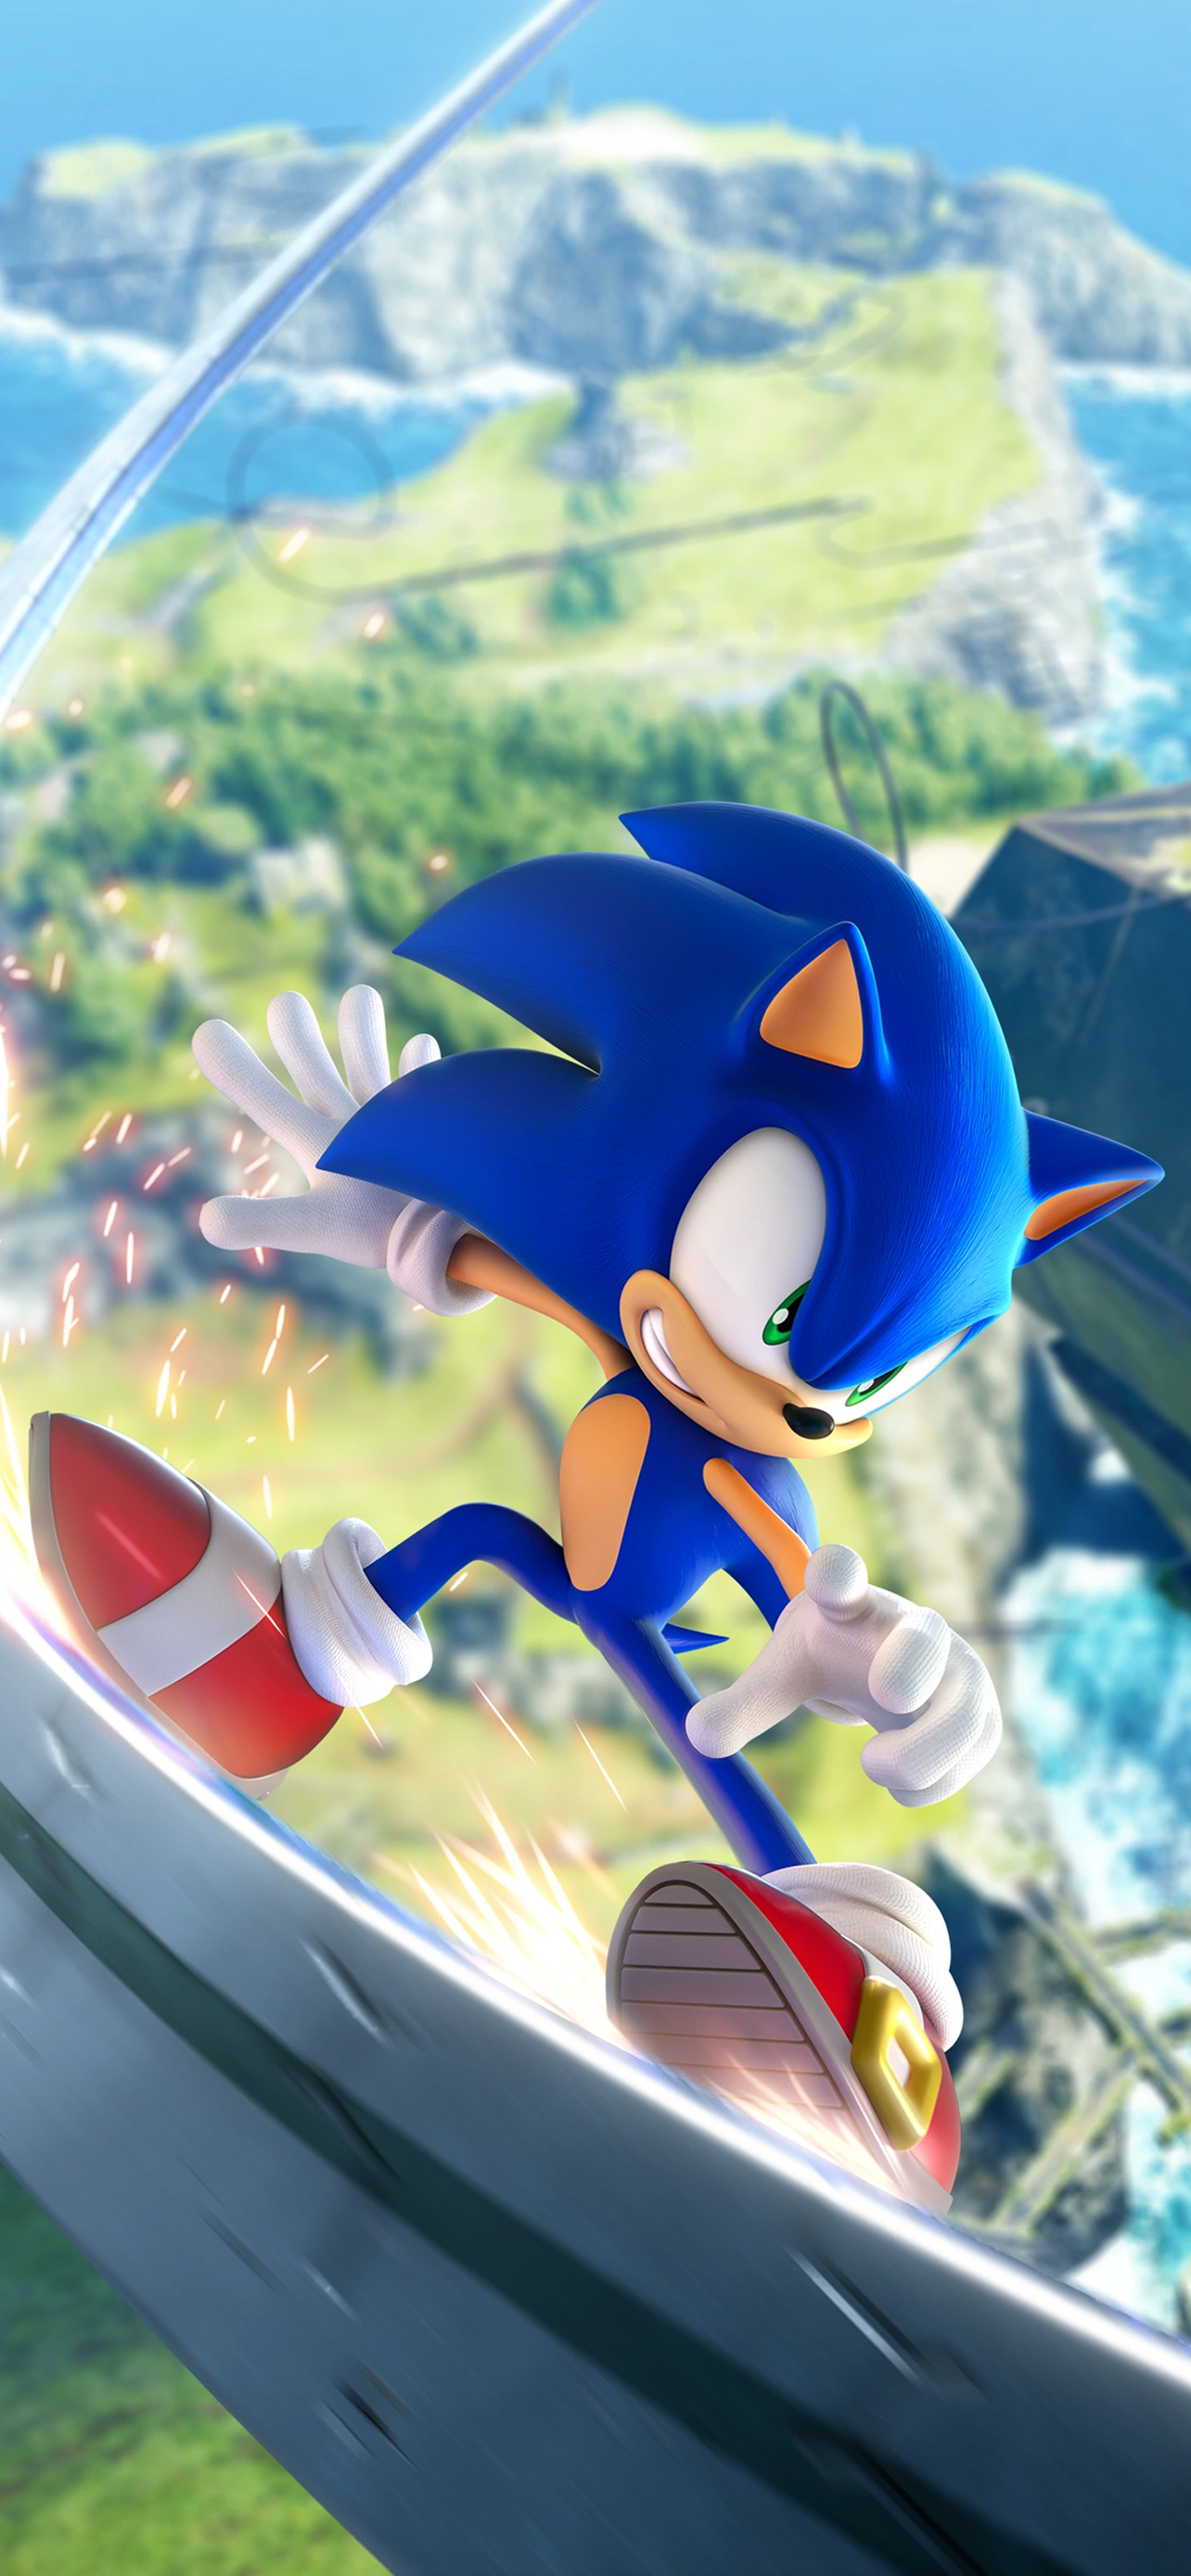 Sonic Frontiers já pode ser jogado em celulares Android, IOS e PCs